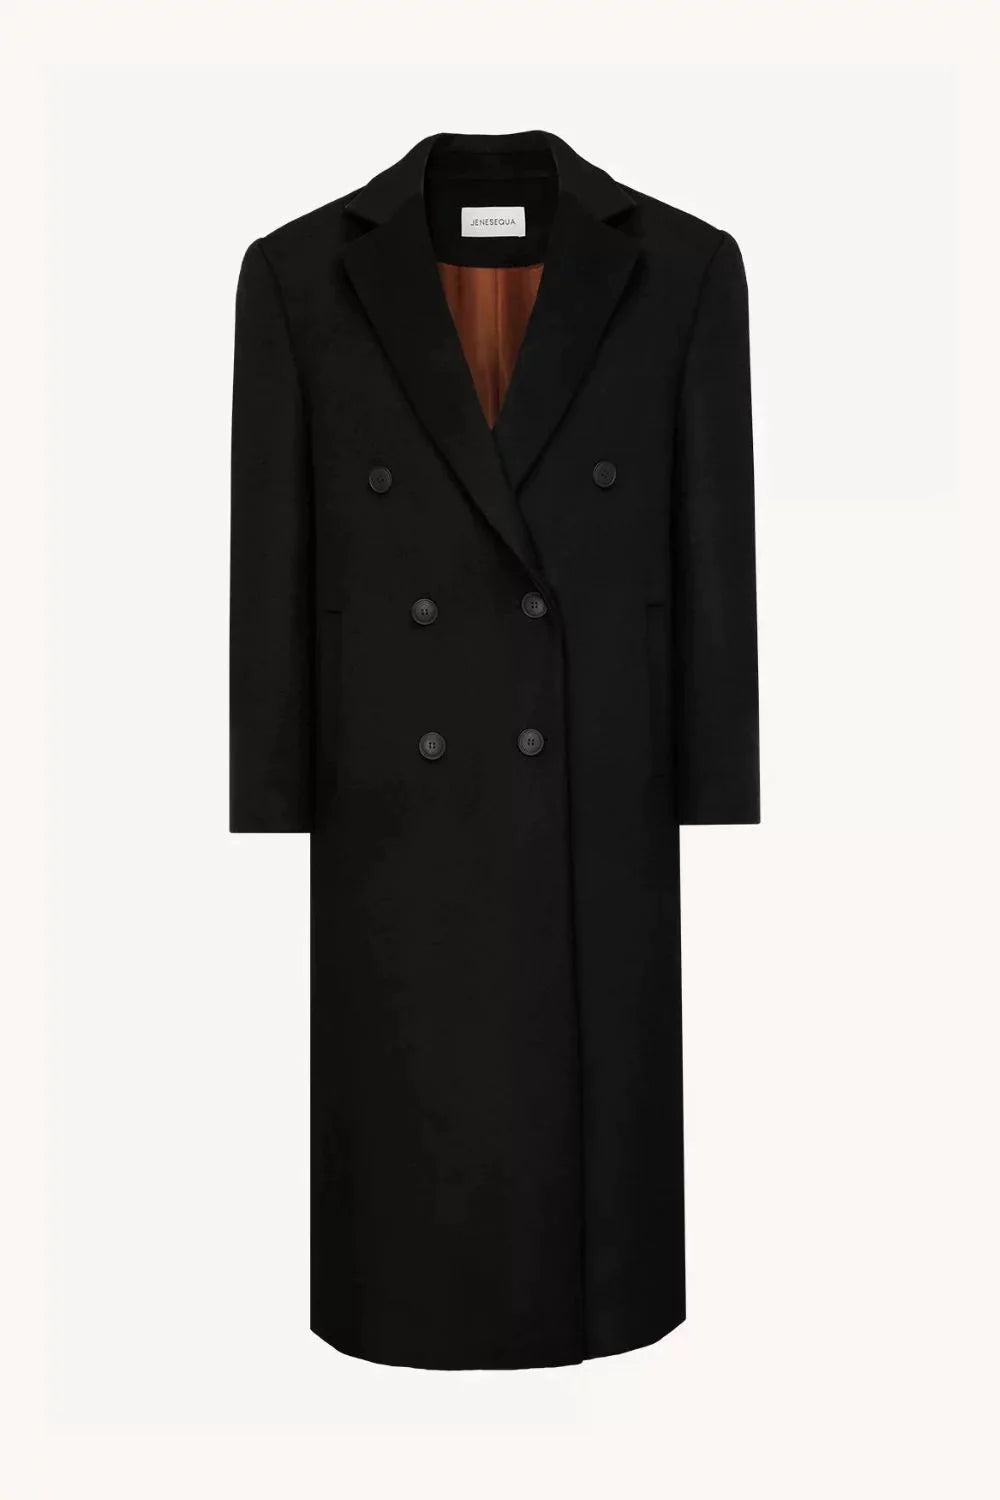 Paris Black coat